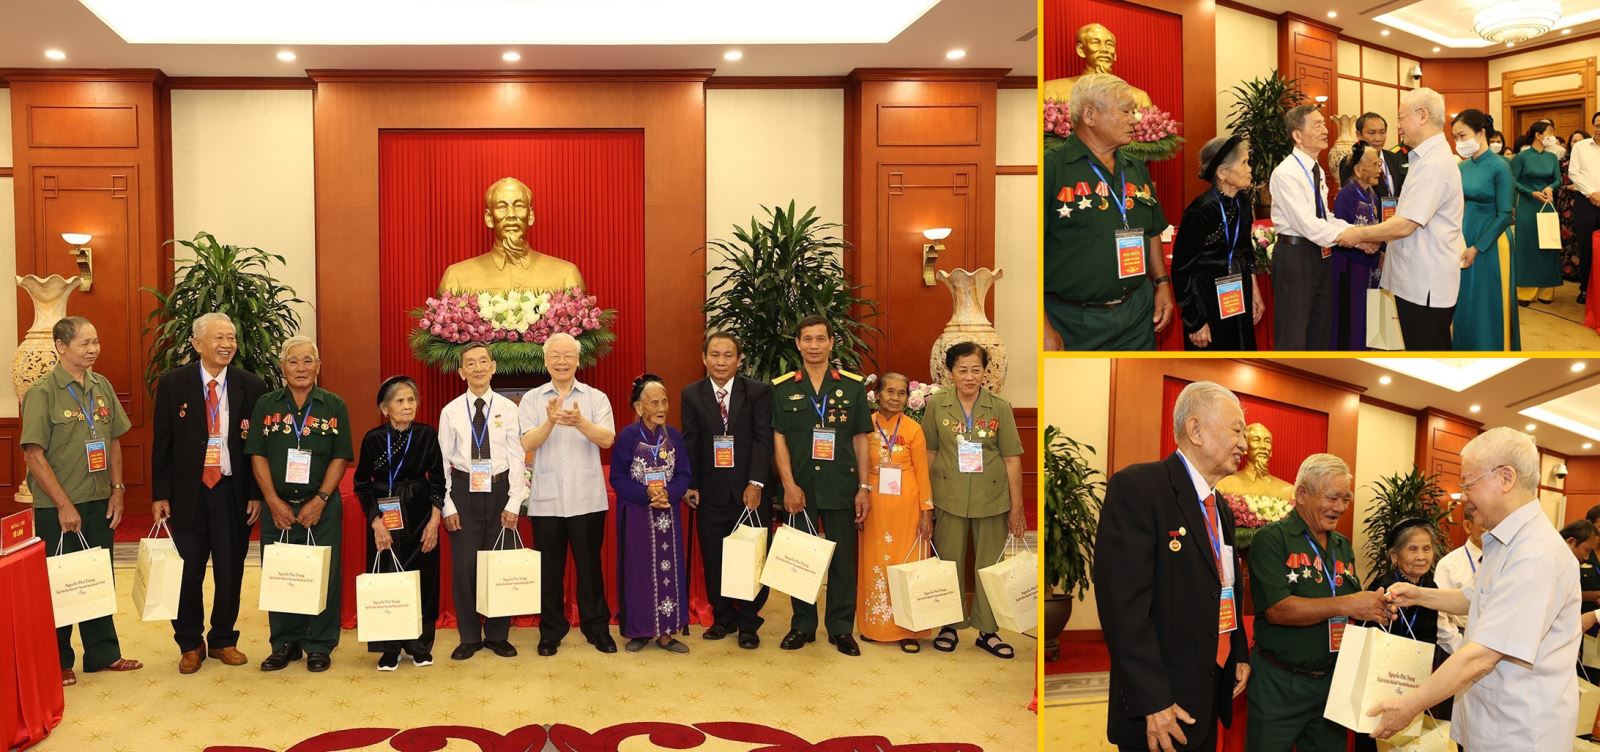 Tổng Bí thư Nguyễn Phú Trọng tặng quà cho các đại biểu người có công tiêu biểu toàn quốc, nhân dịp kỷ niệm 75 năm Ngày Thương binh - Liệt sĩ (27/7/1947 - 27/7/2022)